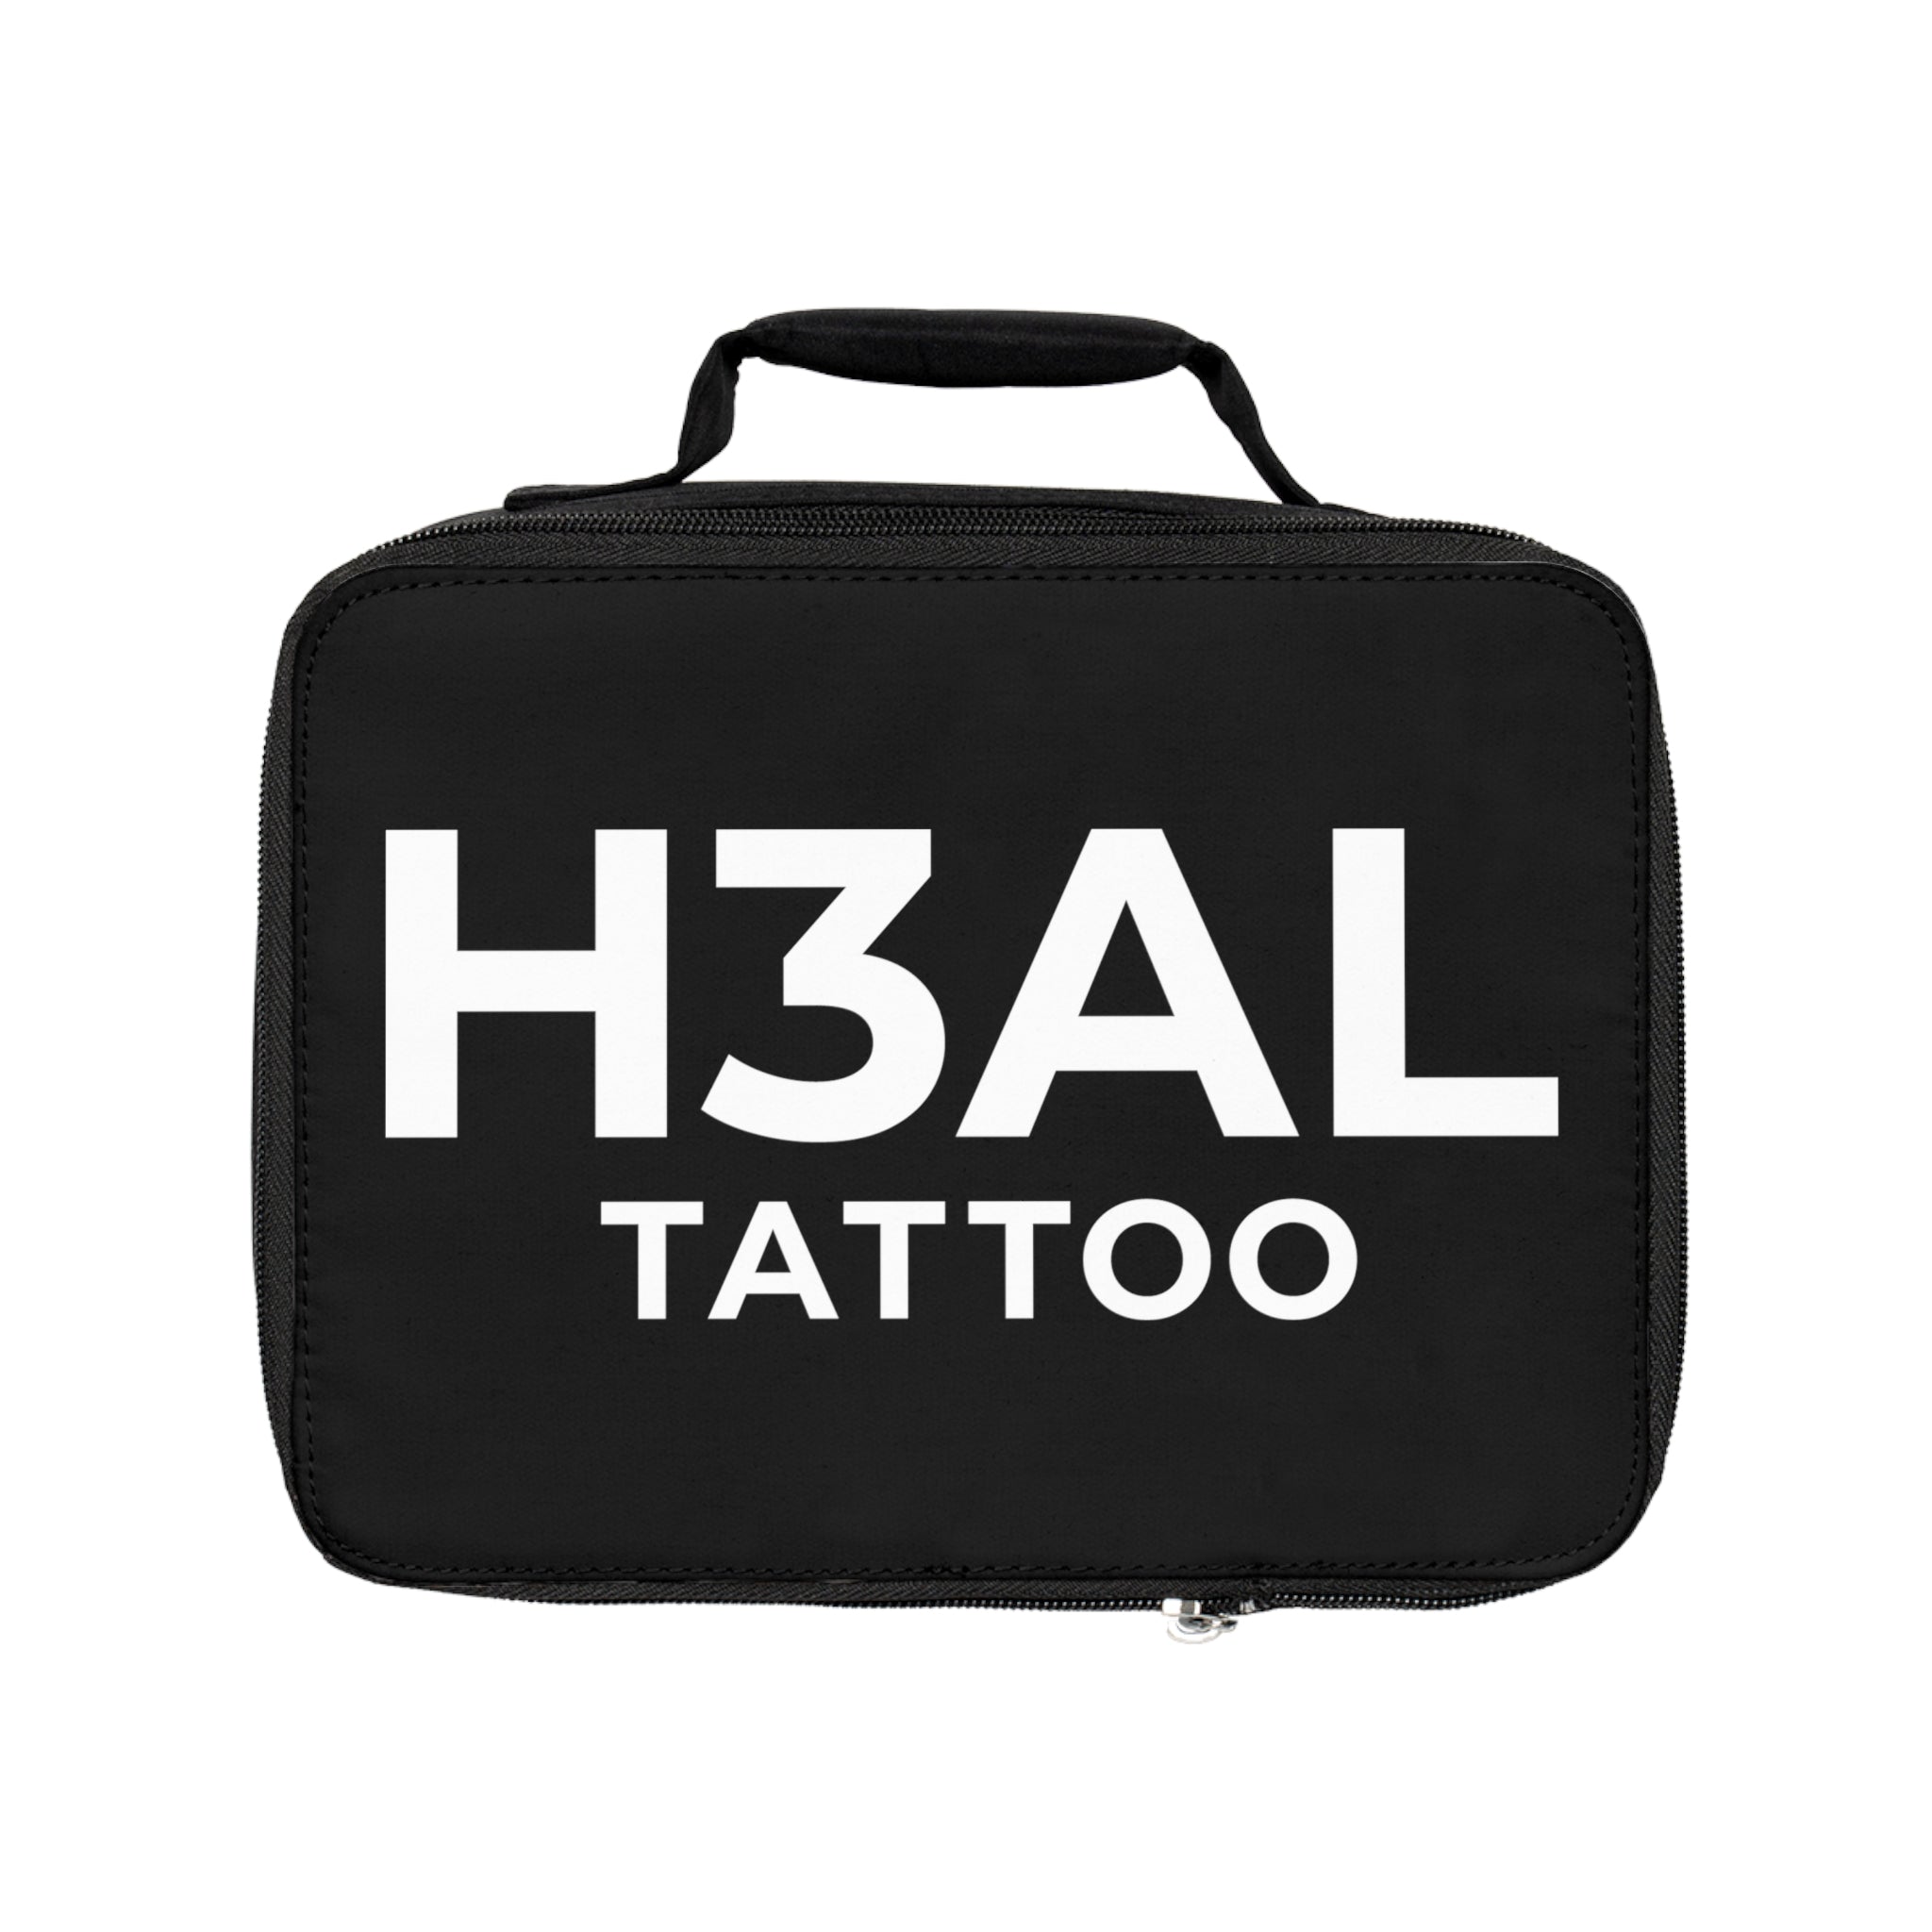 H3AL TATTOO Lunch Bag